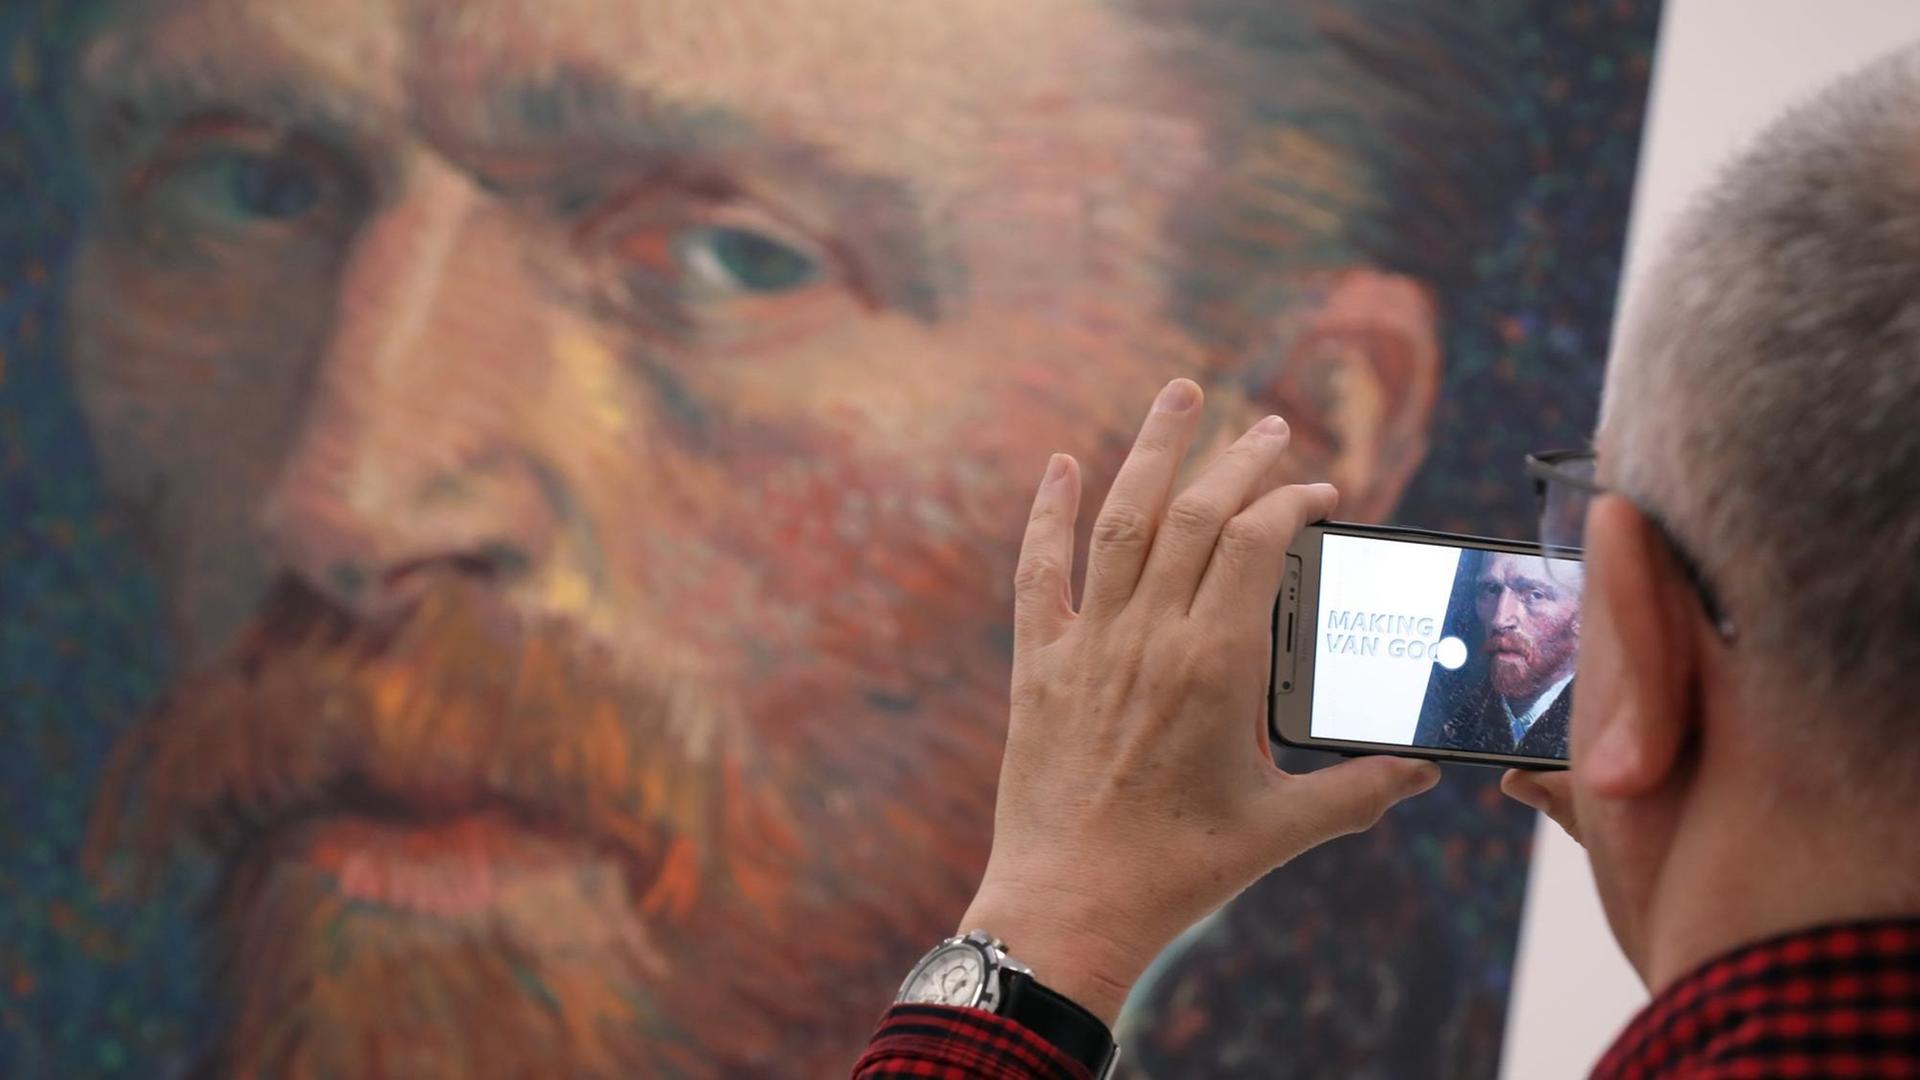 Ein Besucher fotografiert ein Portät von Vincent Van Gogh in der Ausstellung "Making Van Gogh" auf seinem Smartphone. Die Ausstellung im Staedel Museum in Frankfurt untersucht die Bedeutung von Vincent van Gogh in der Moderne.